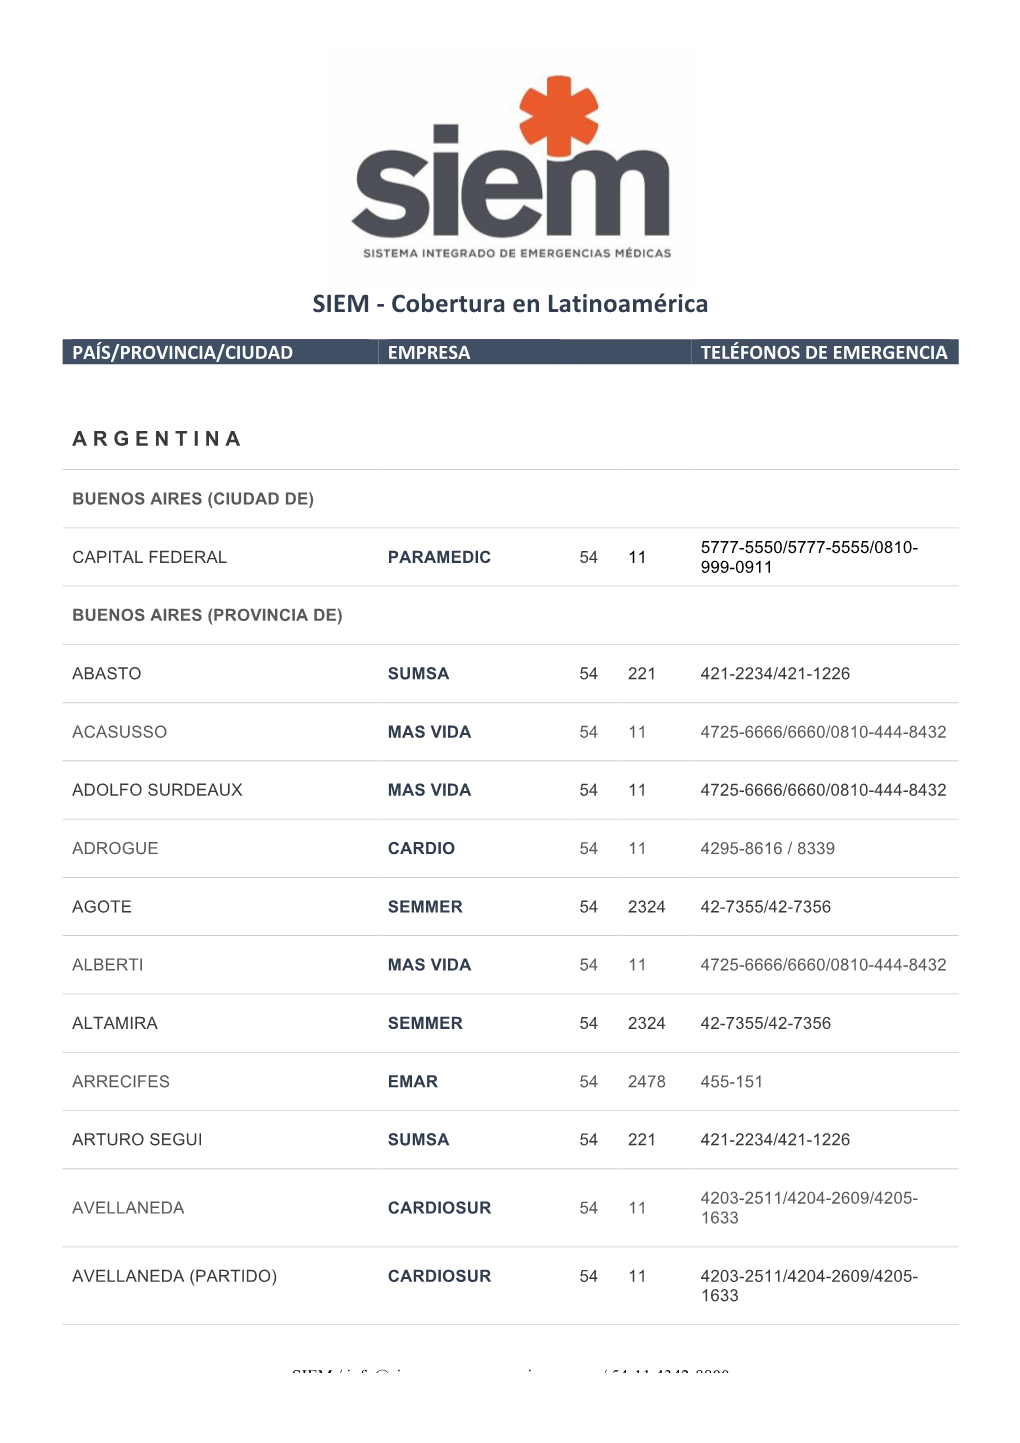 SIEM - Cobertura En Latinoamérica